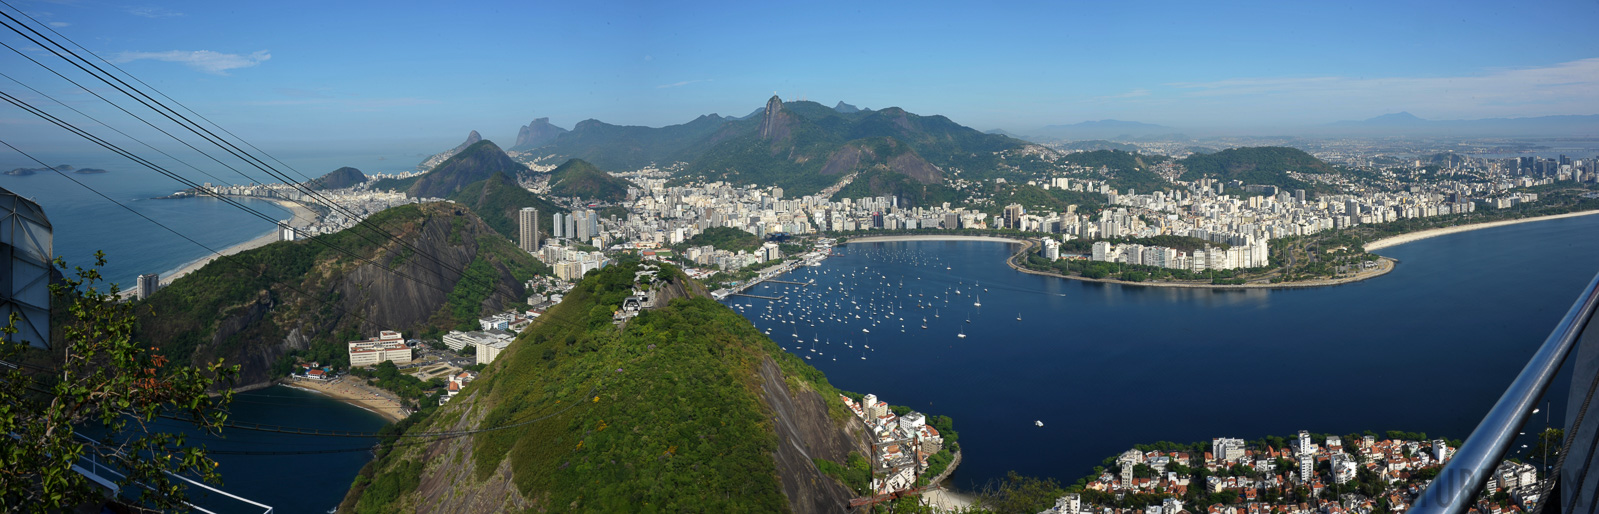 Rio de Janeiro [28 mm, 1/80 sec at f / 18, ISO 200]